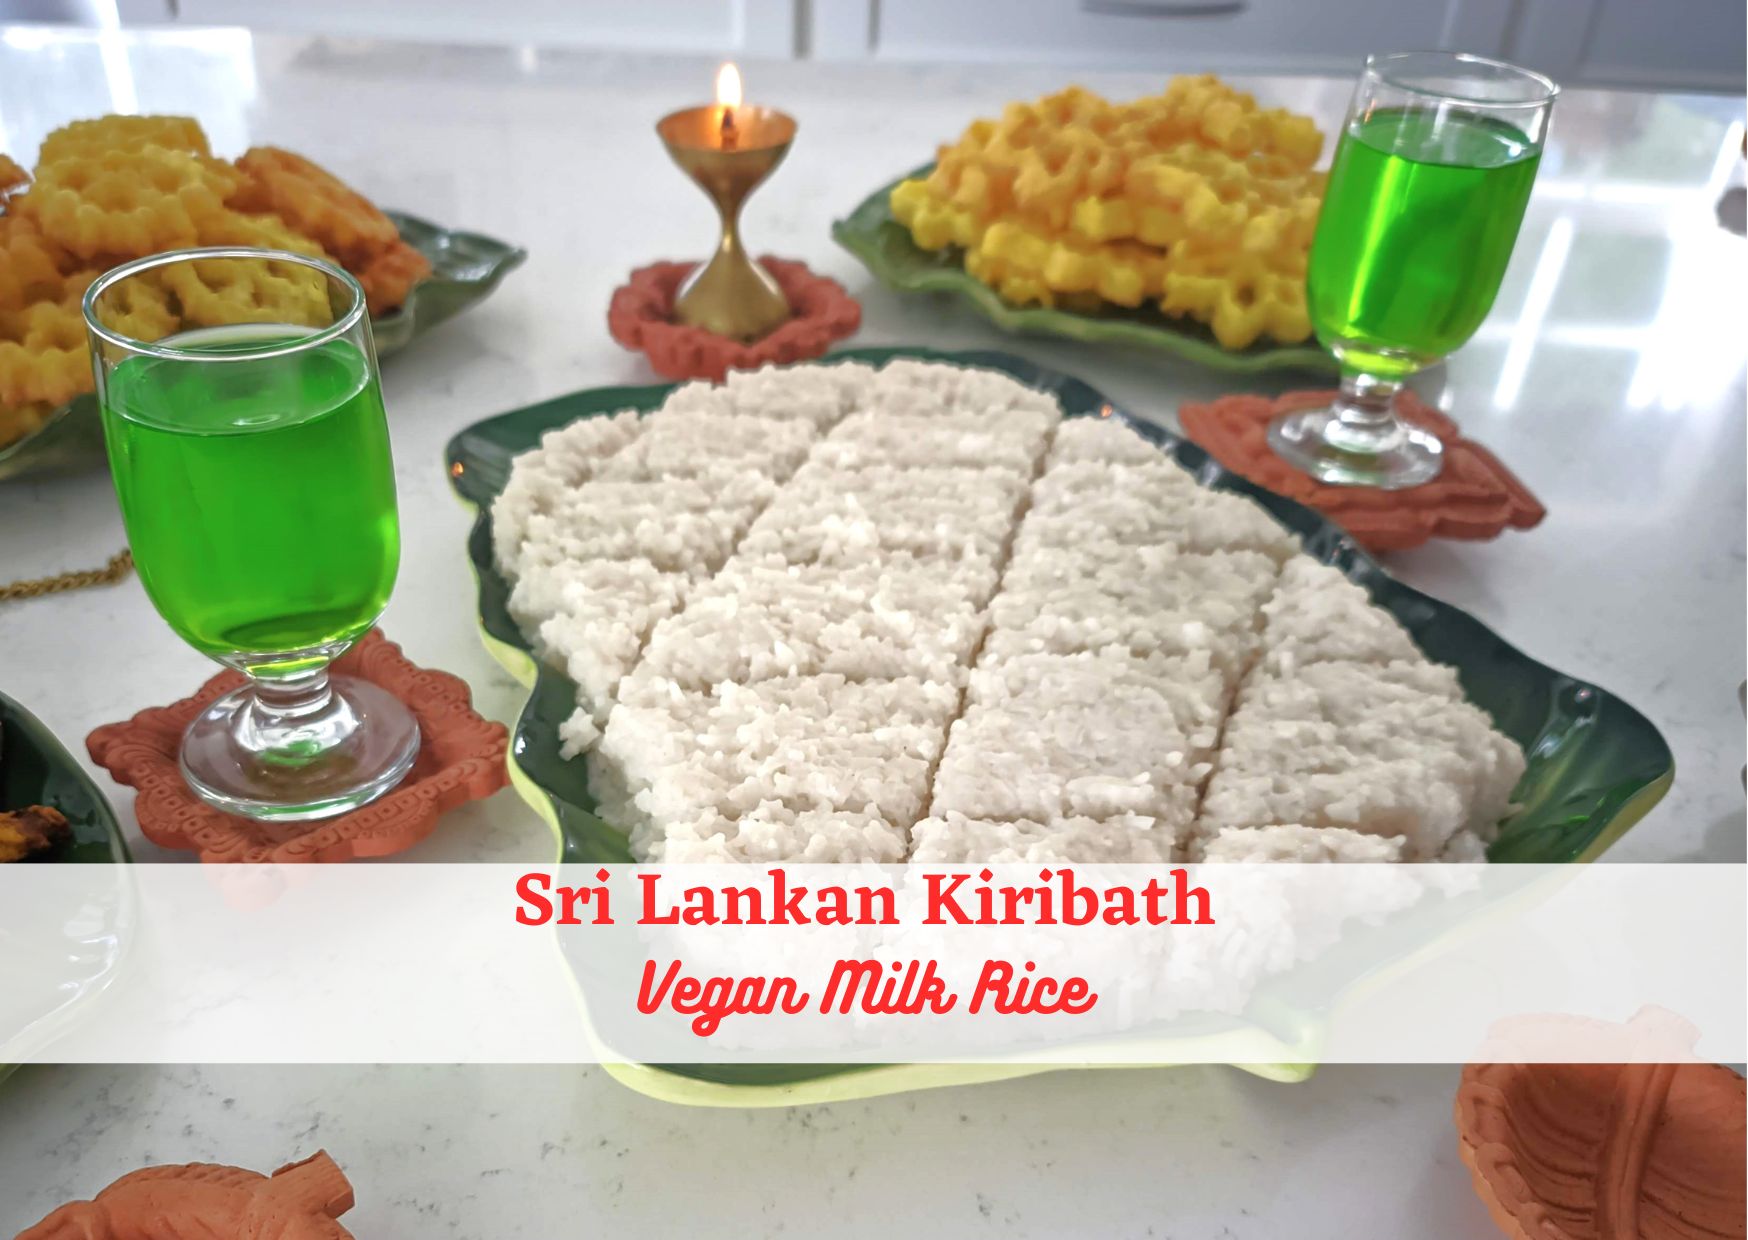 Vegan Milk Rice Recipe Sri Lankan Kiribath